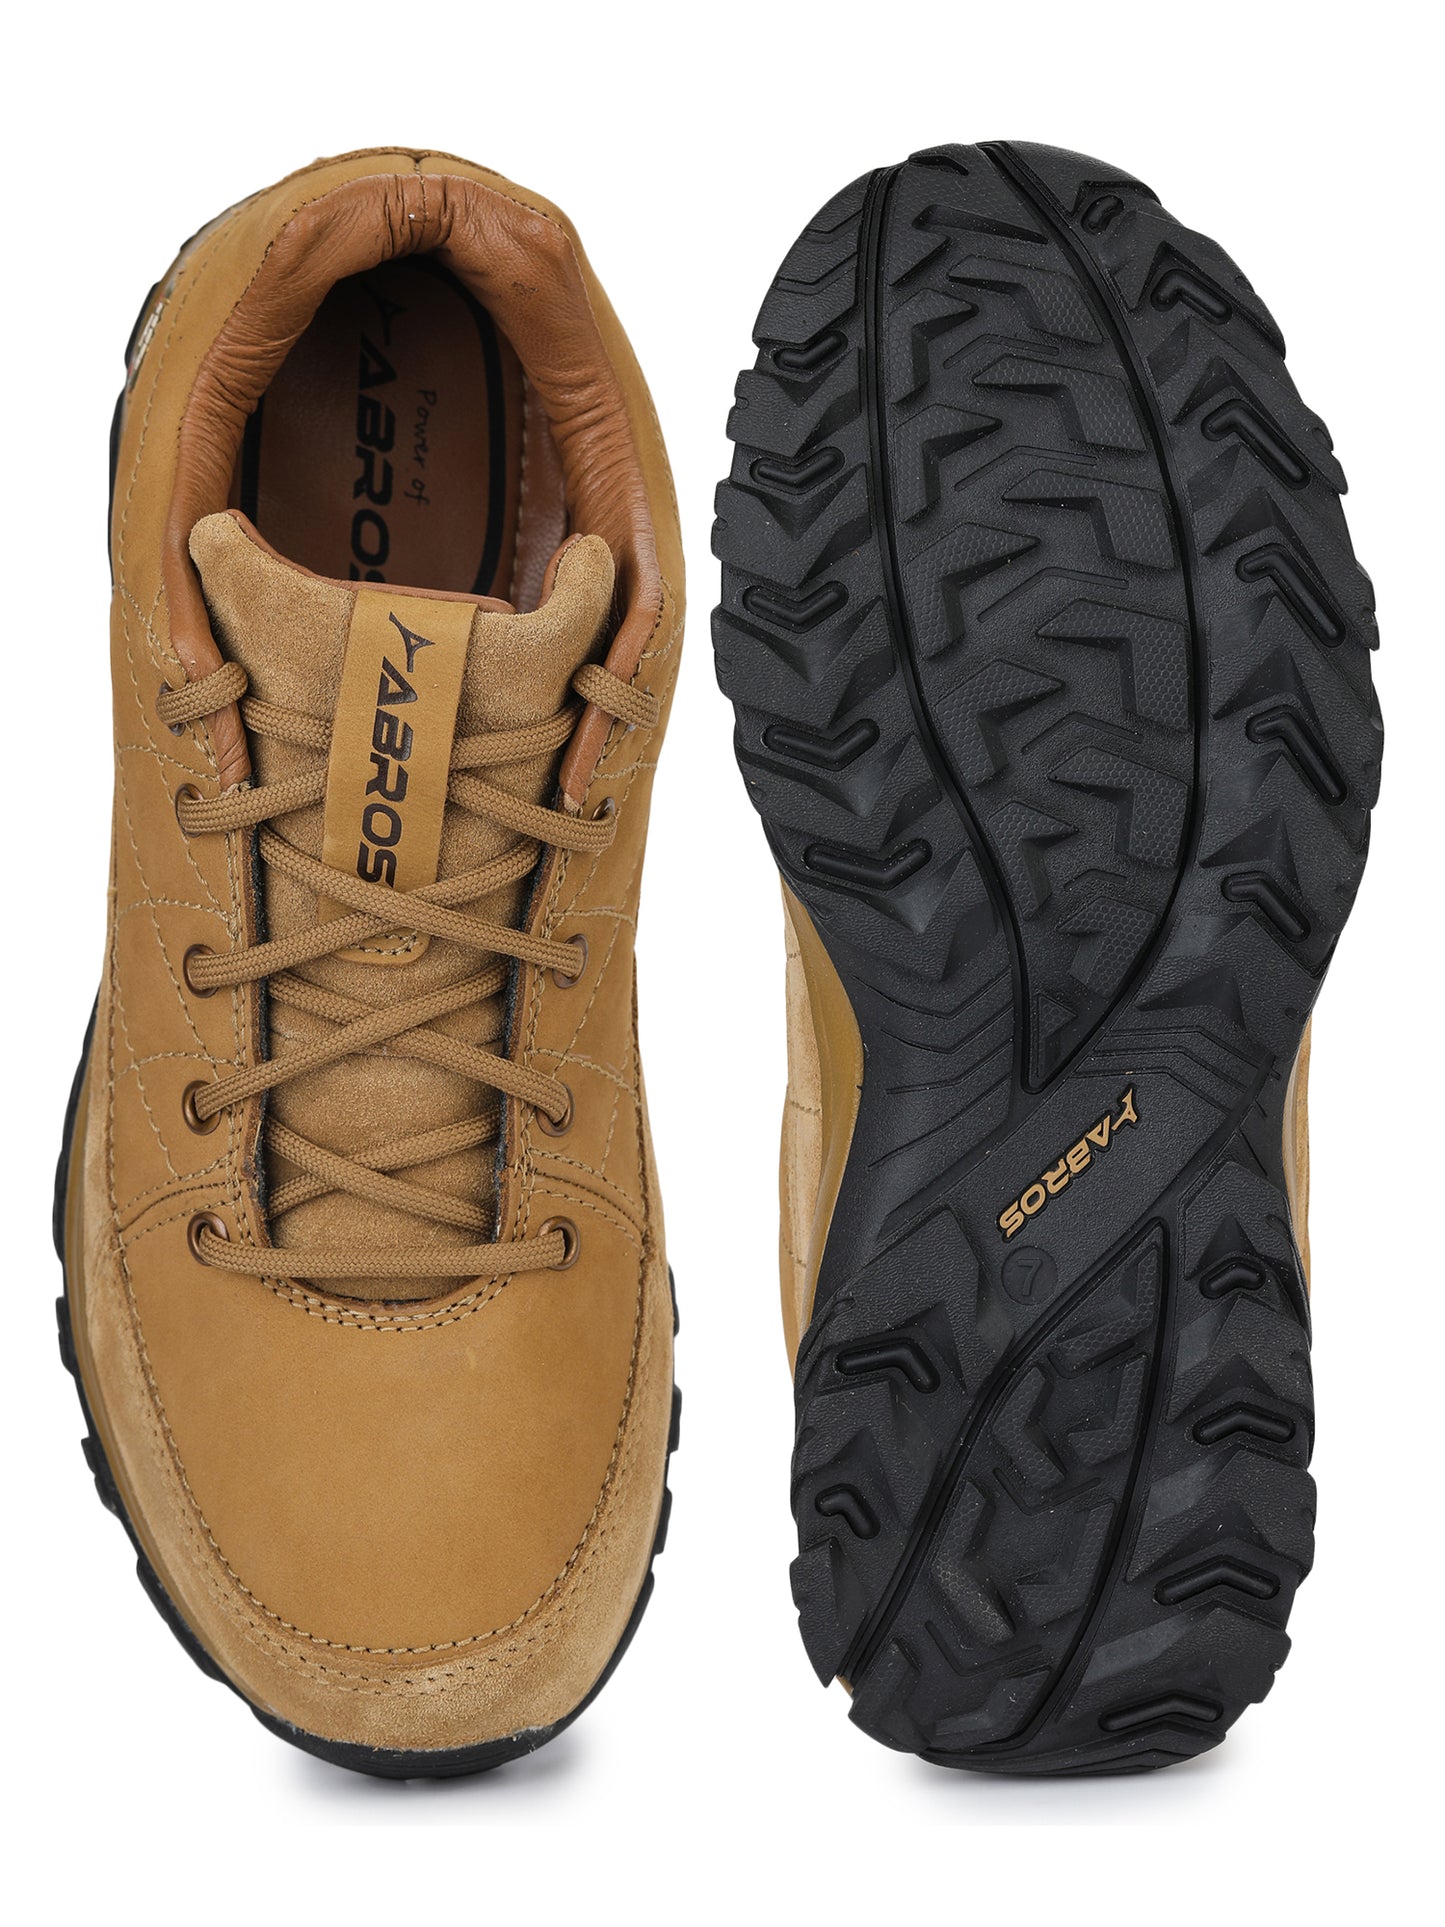 Renatoo Outdoor-Shoes For Men's